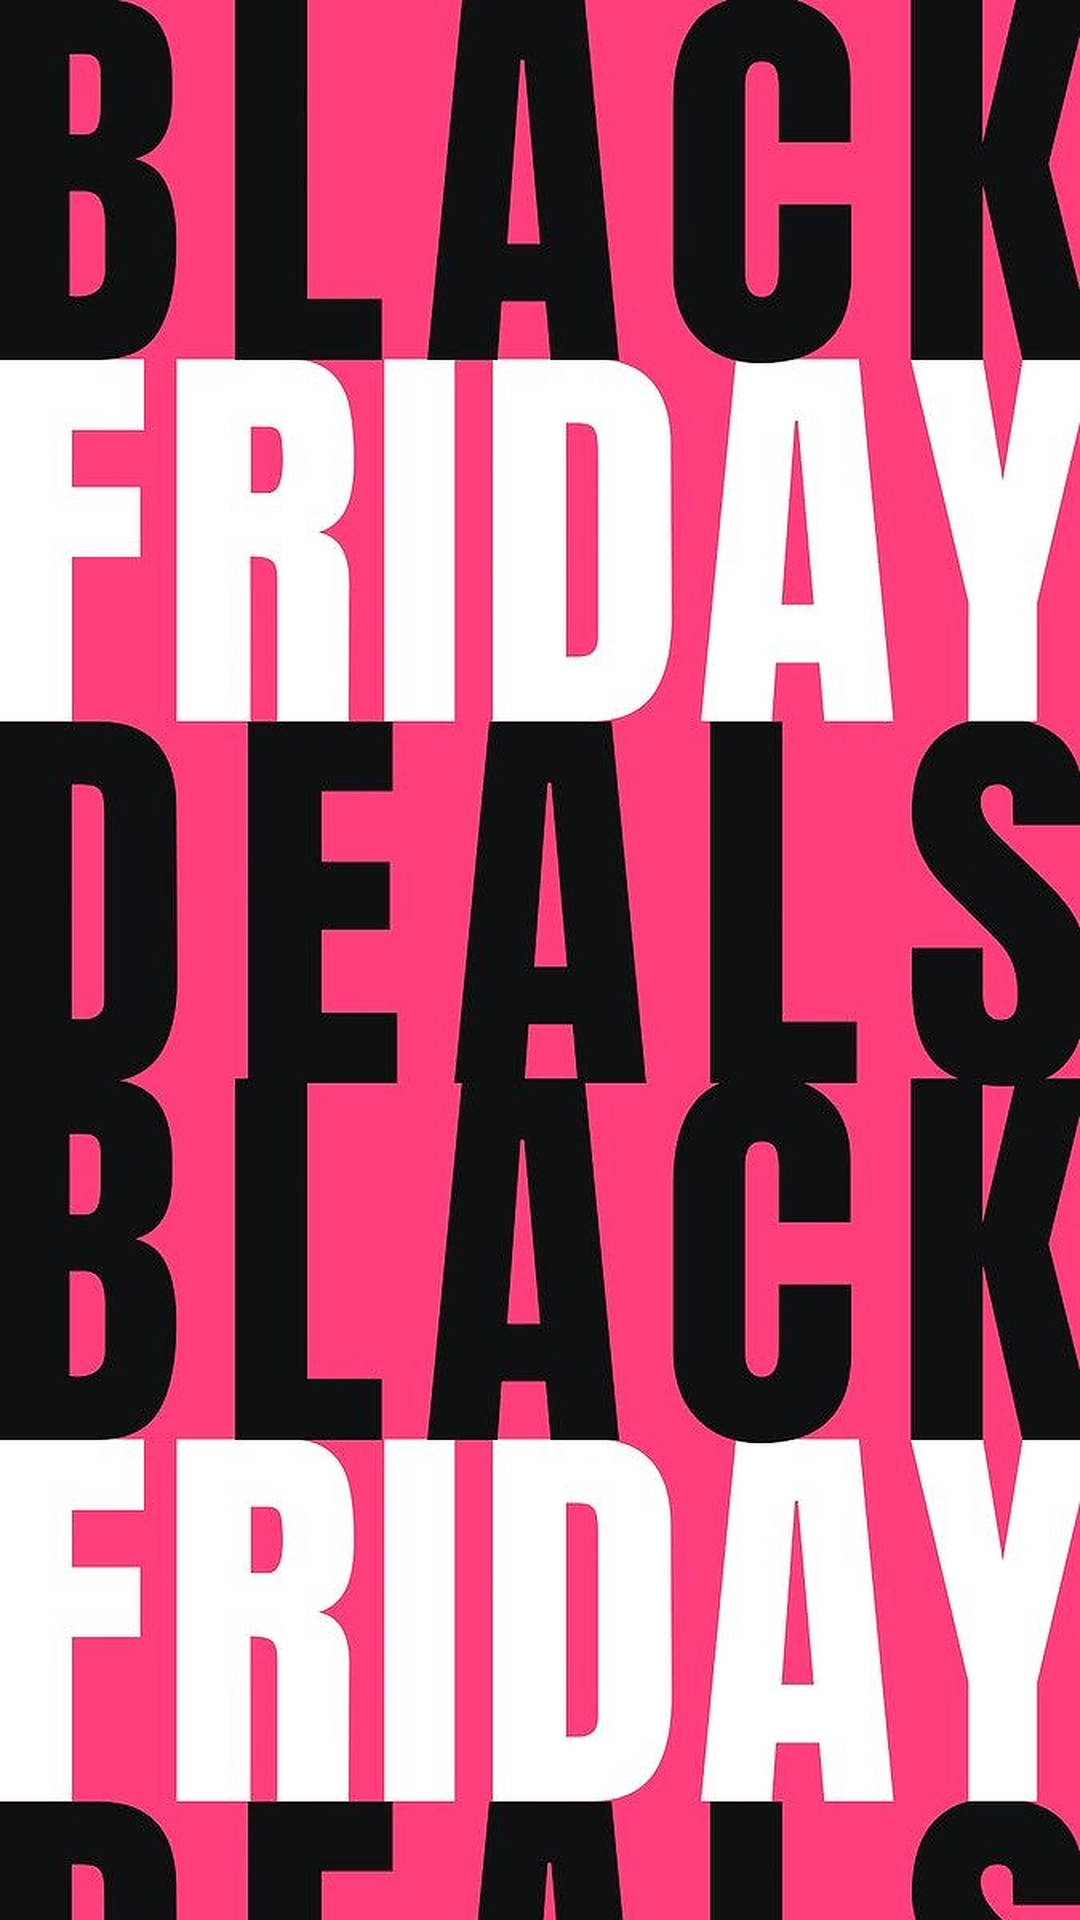 Captivating Black Friday Deals and Discounts Wallpaper